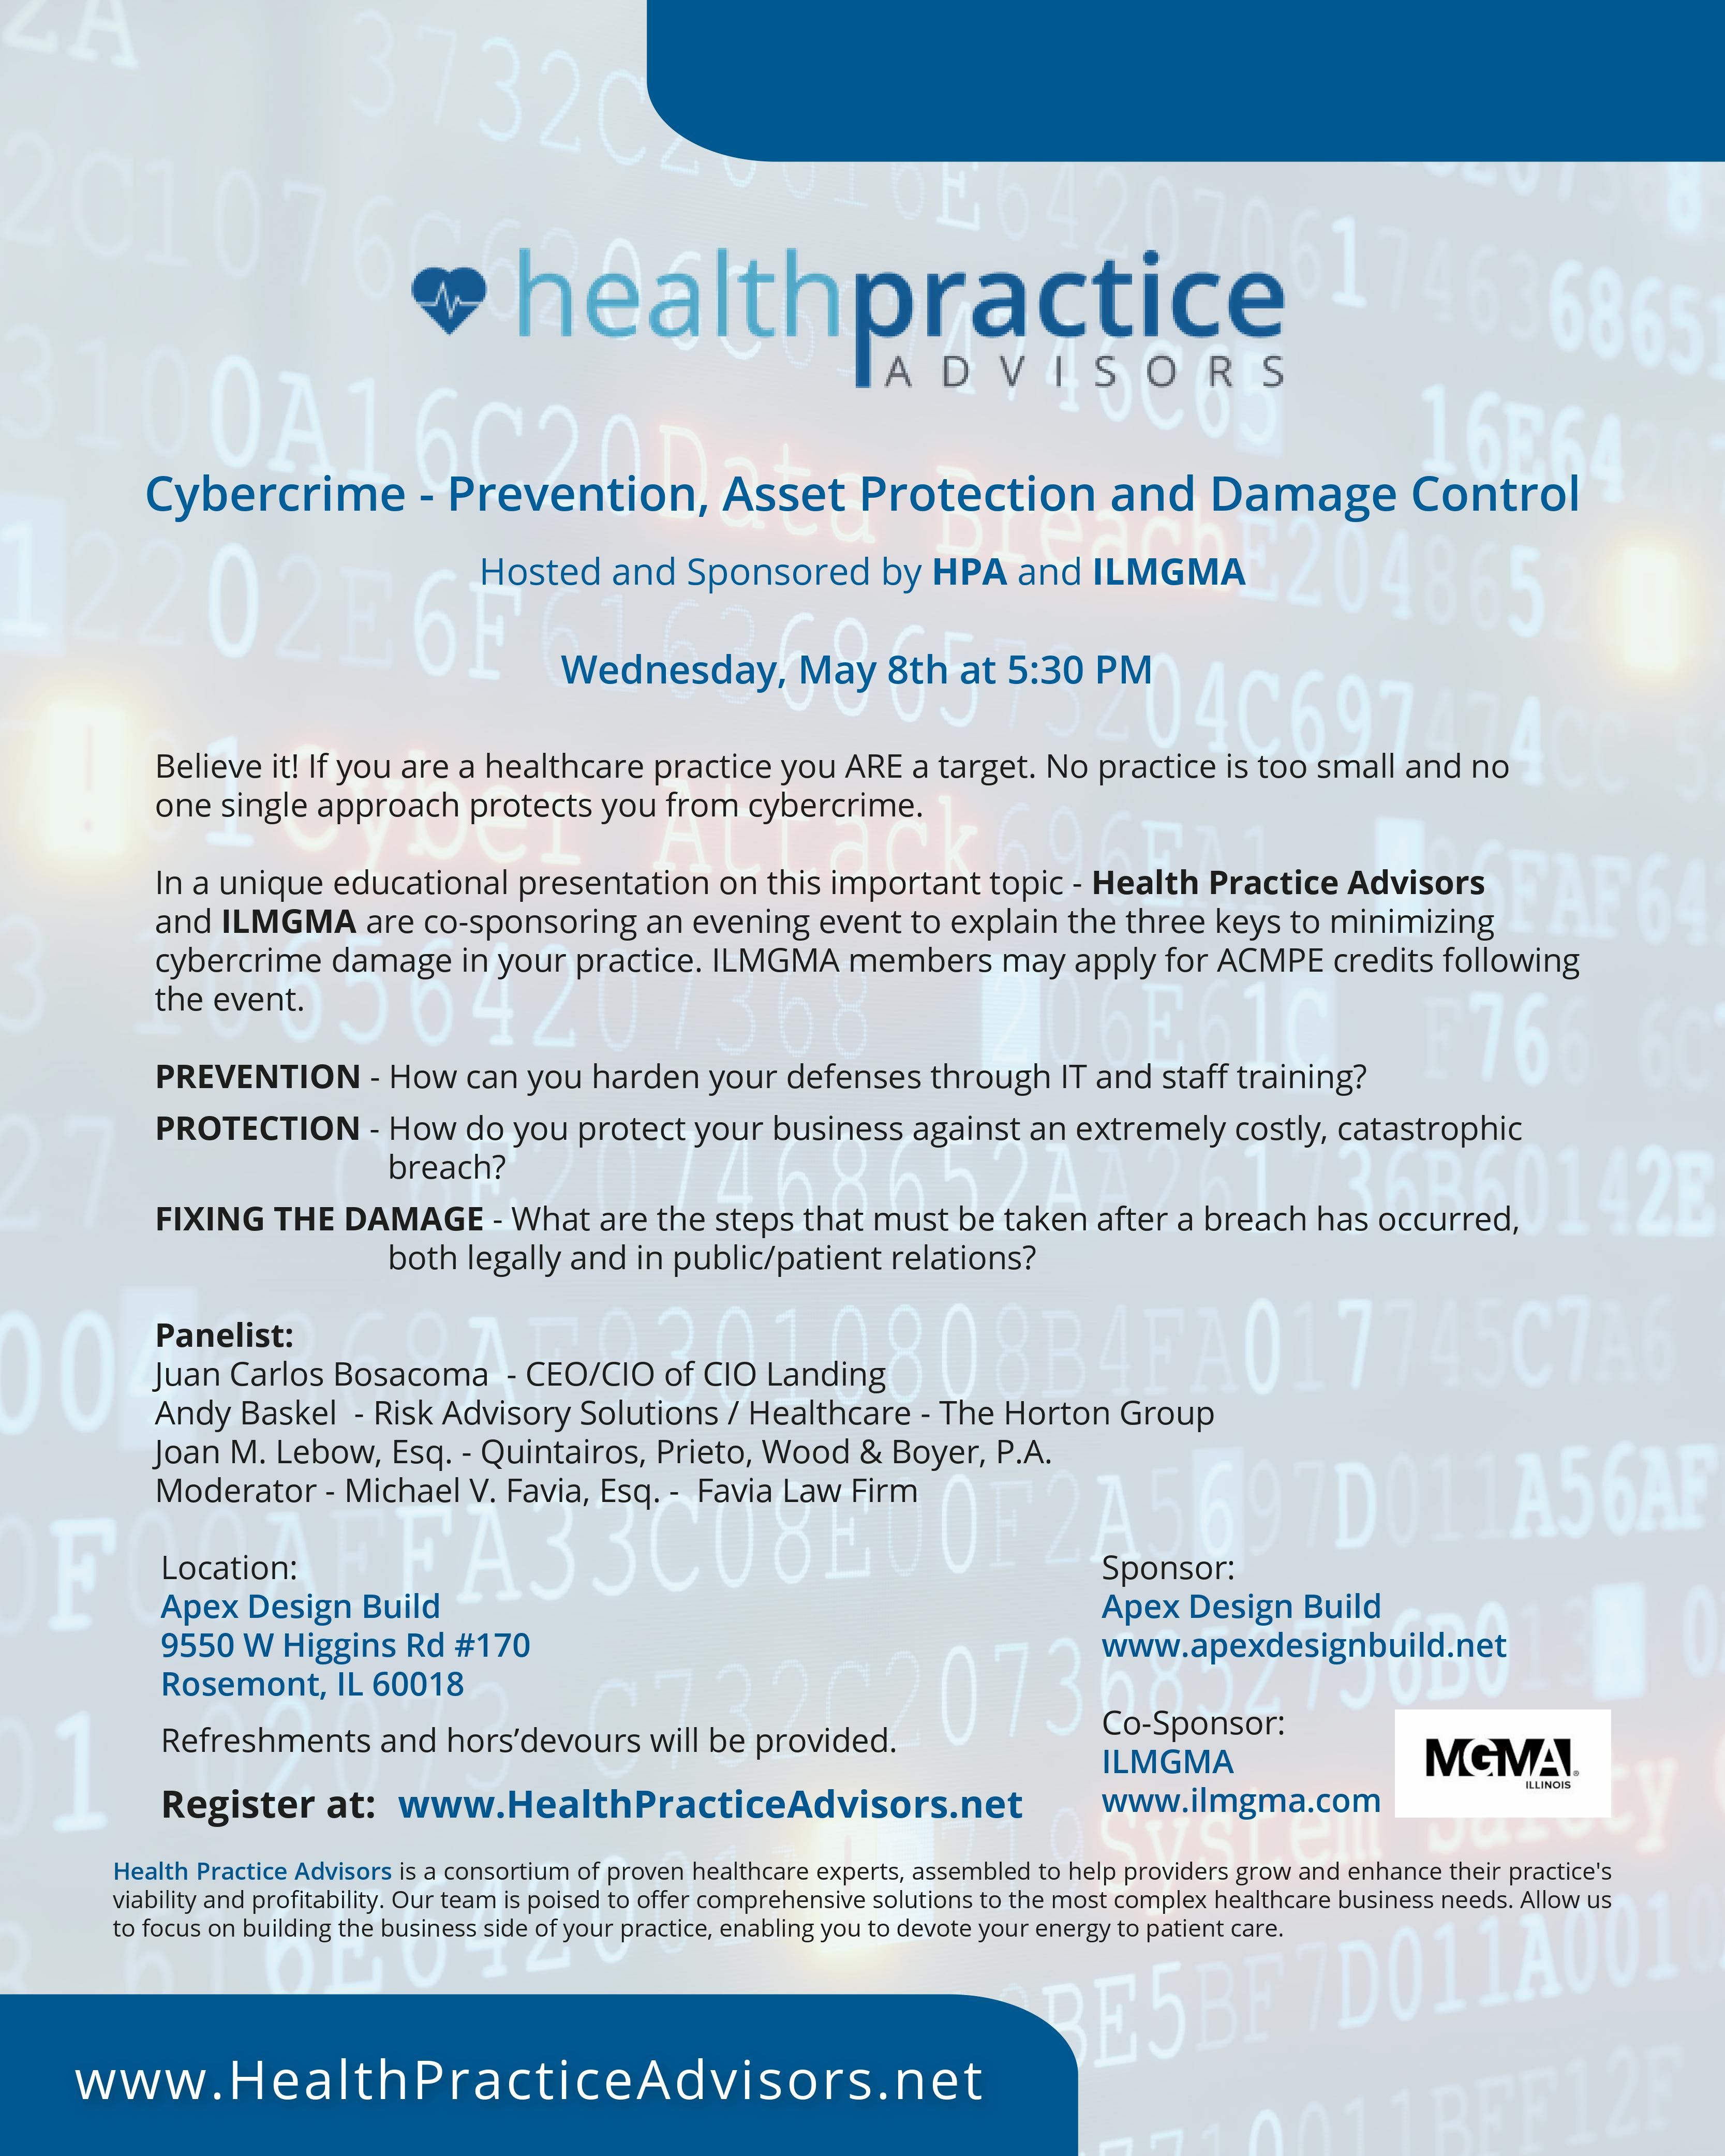 Health Practice Advisors Cybercrime event